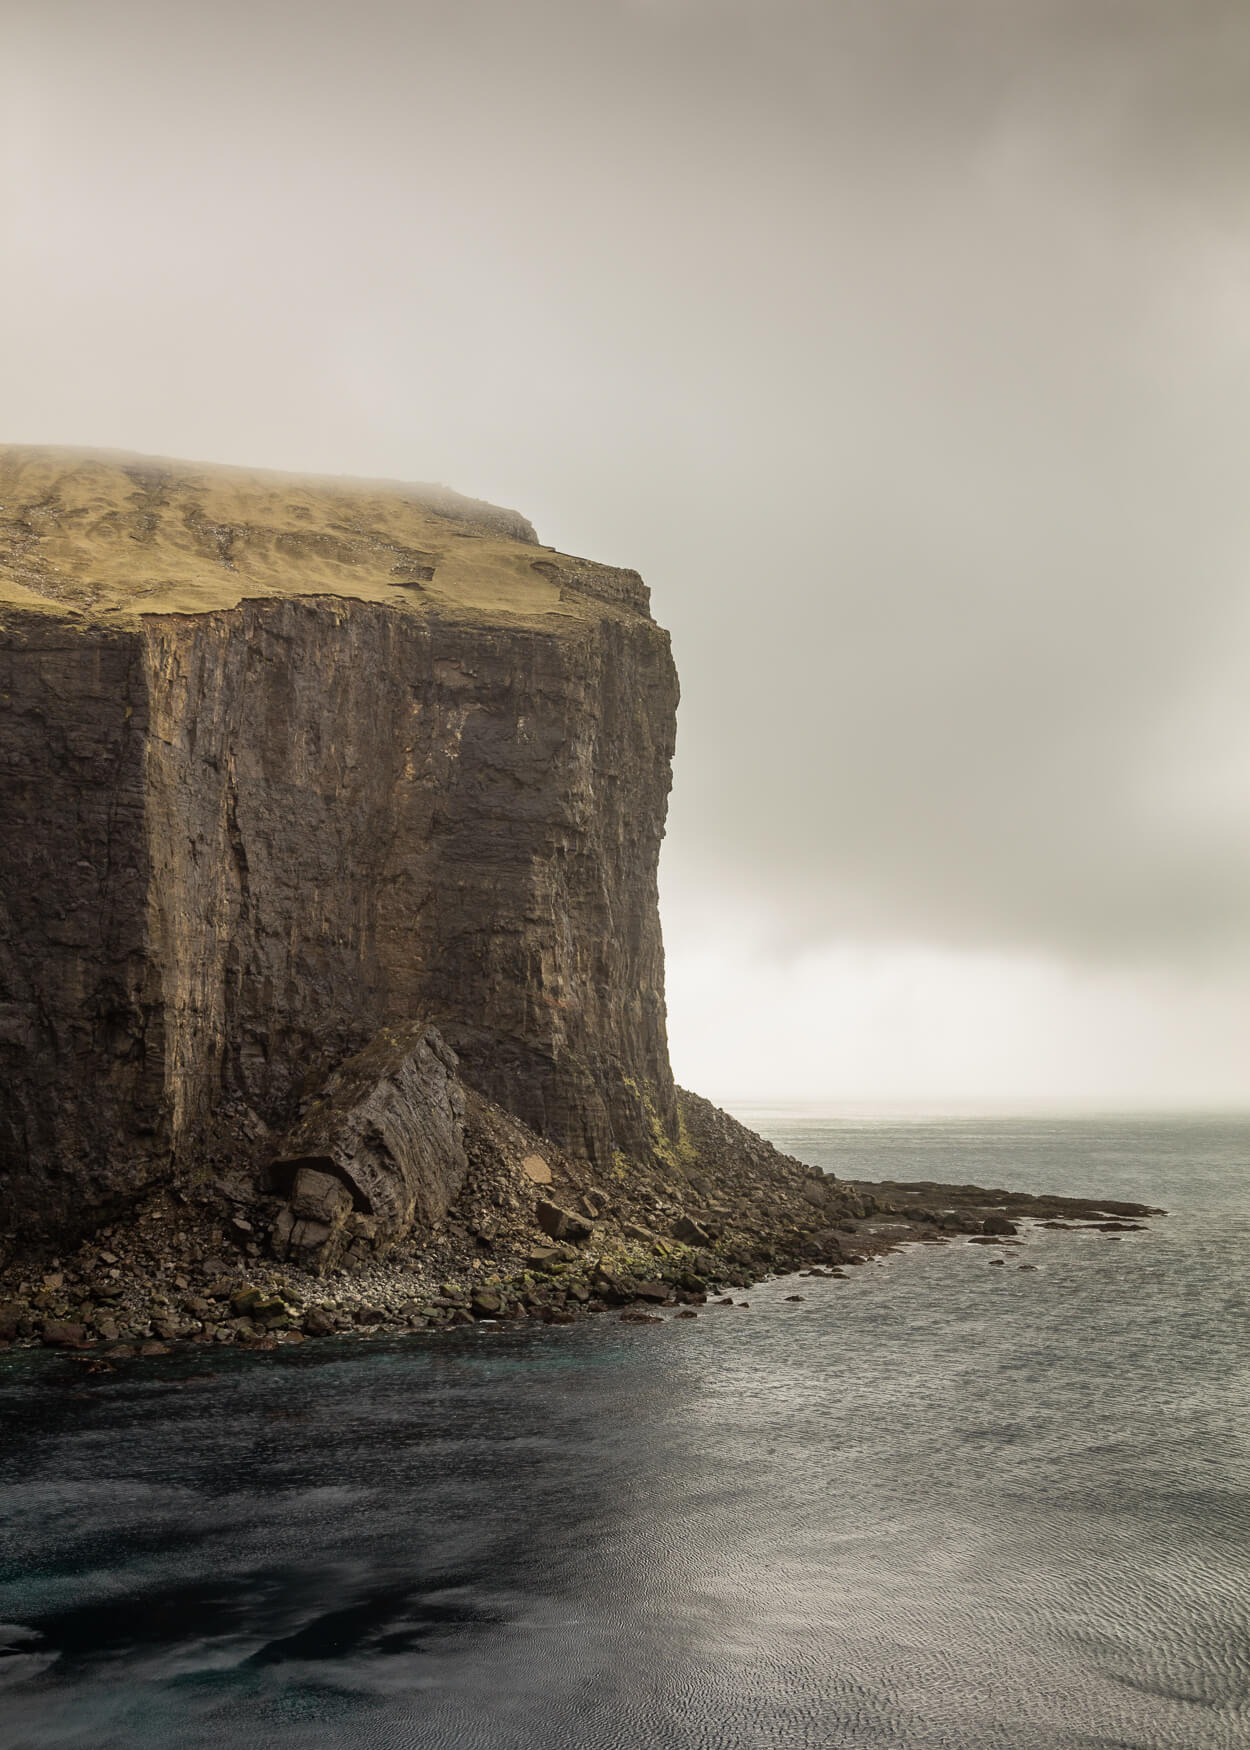 Færøernes landskab er dramatisk